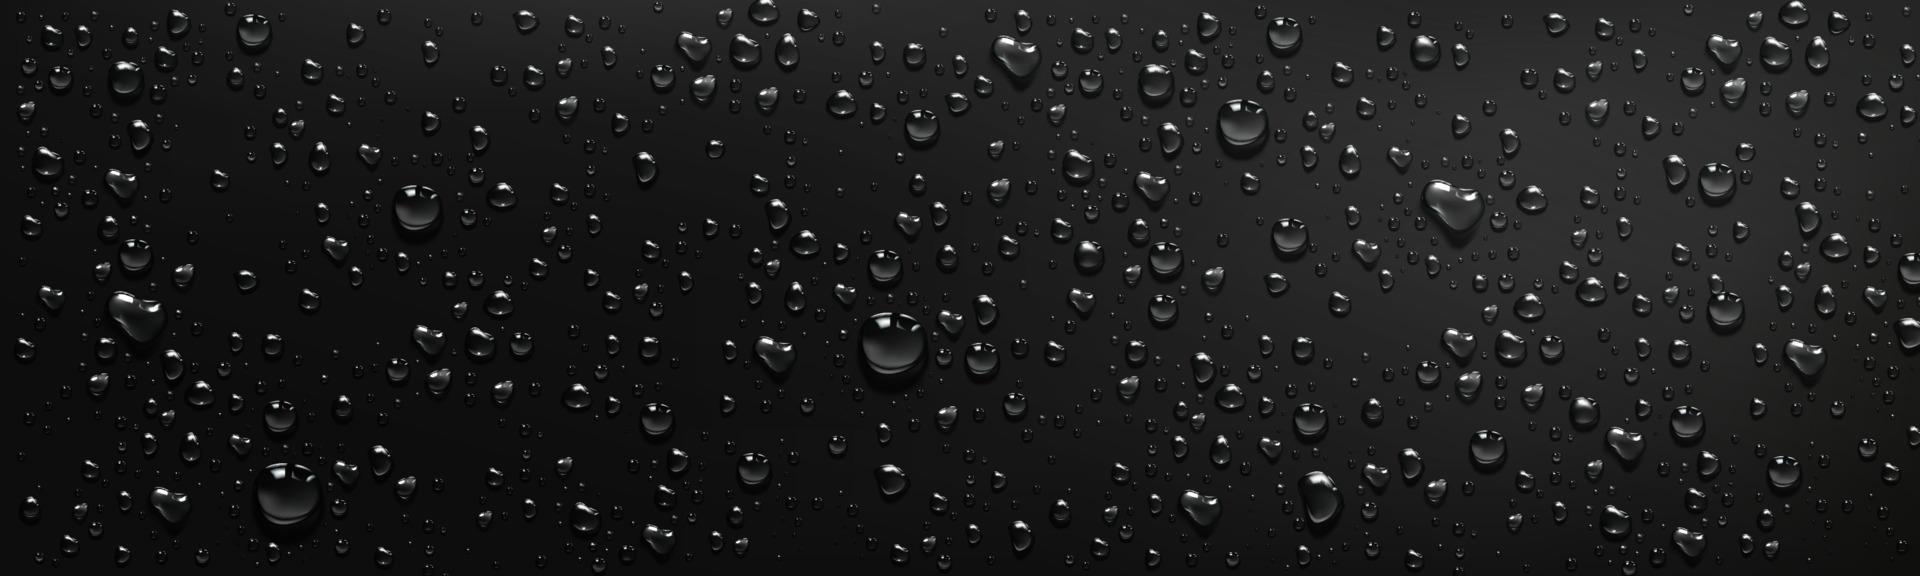 waterdruppels op zwarte achtergrond vector